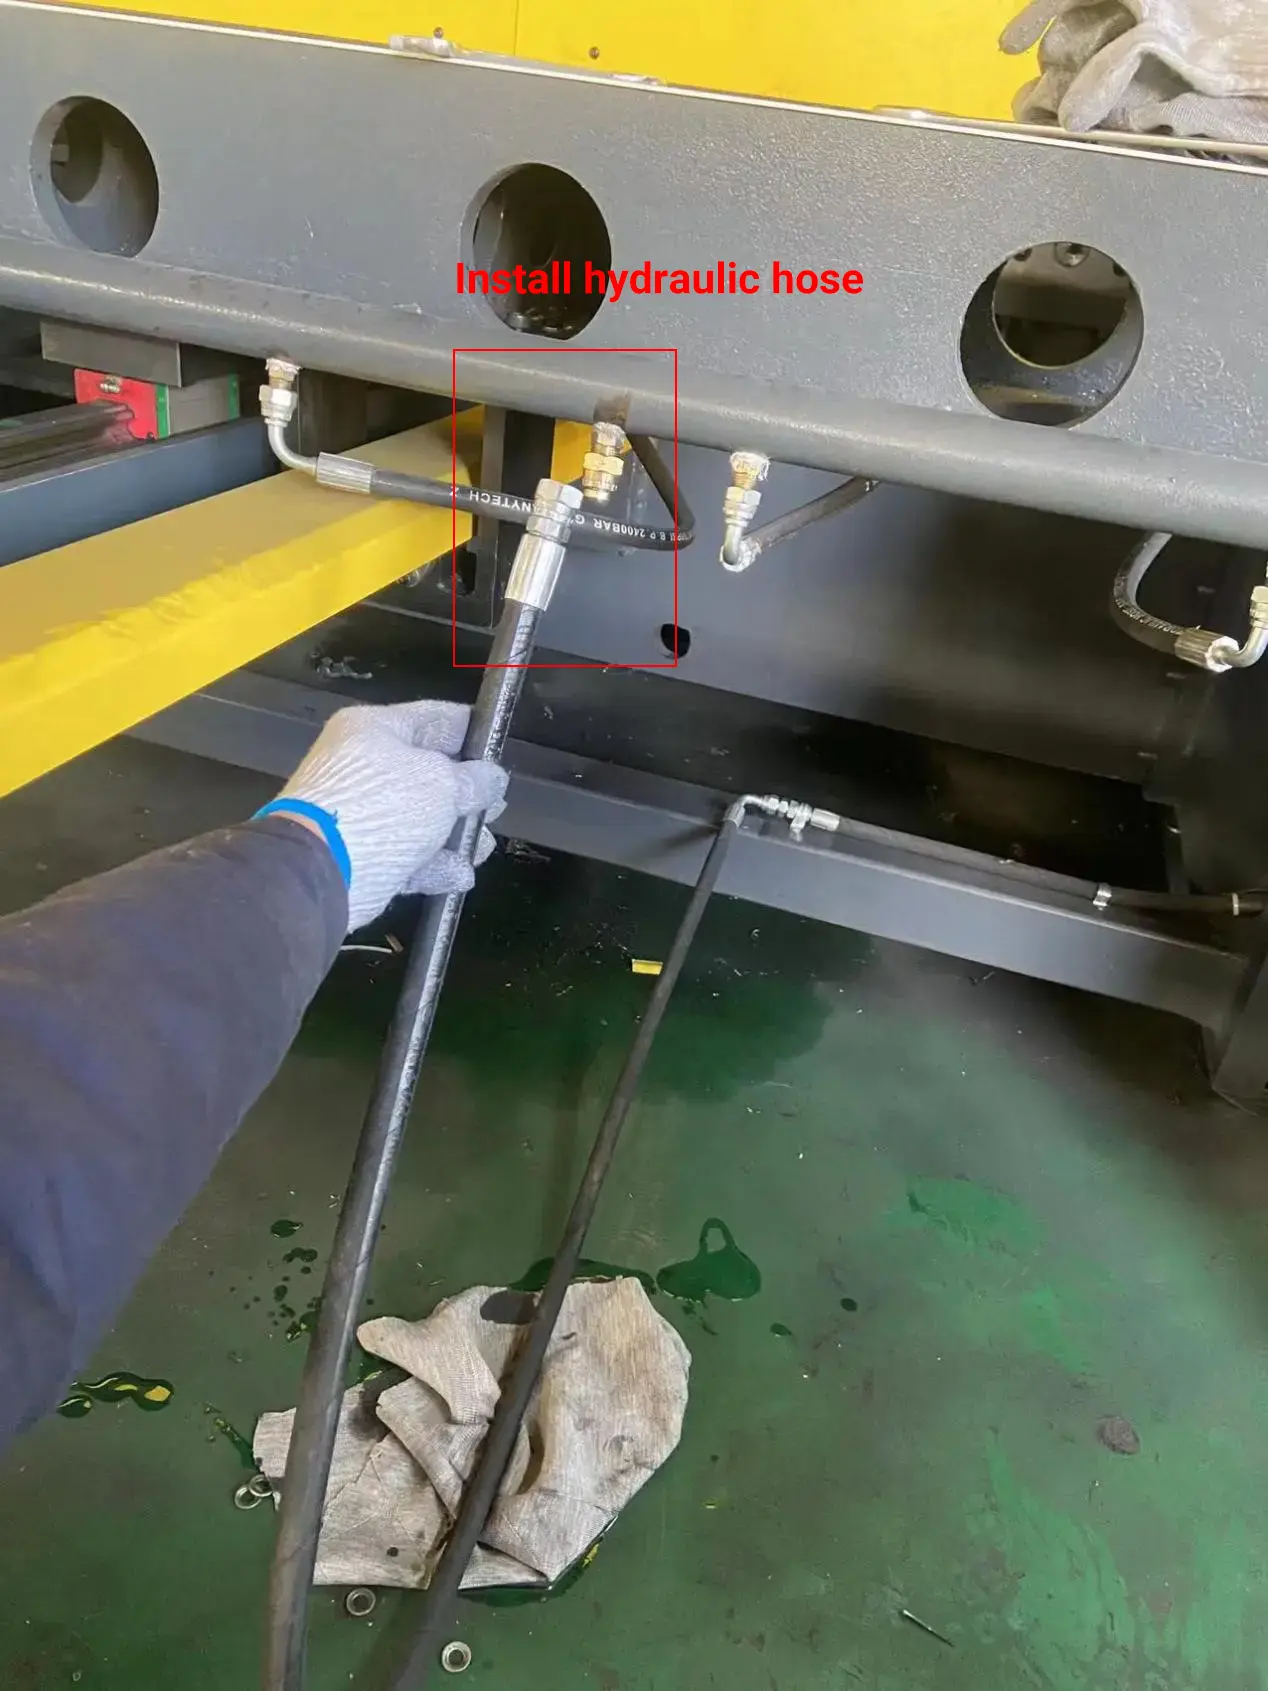 Install hydraulic hose